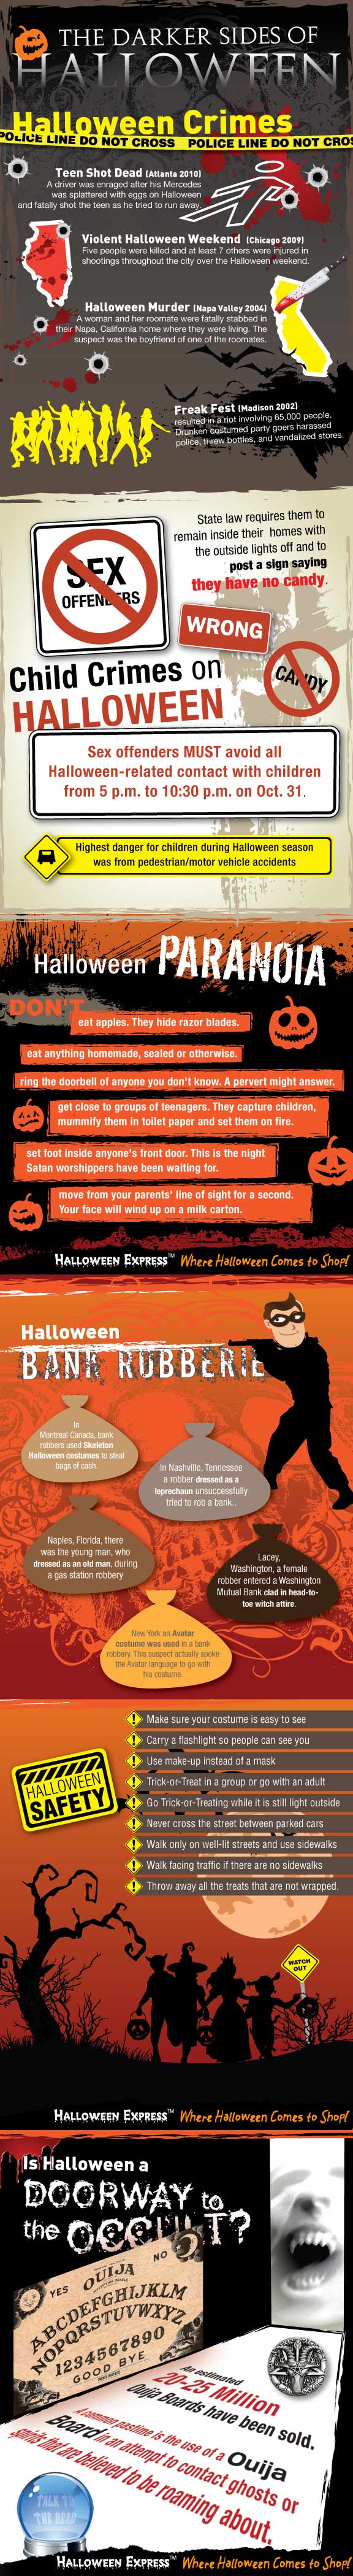 Darker Sides of Halloween Infographic